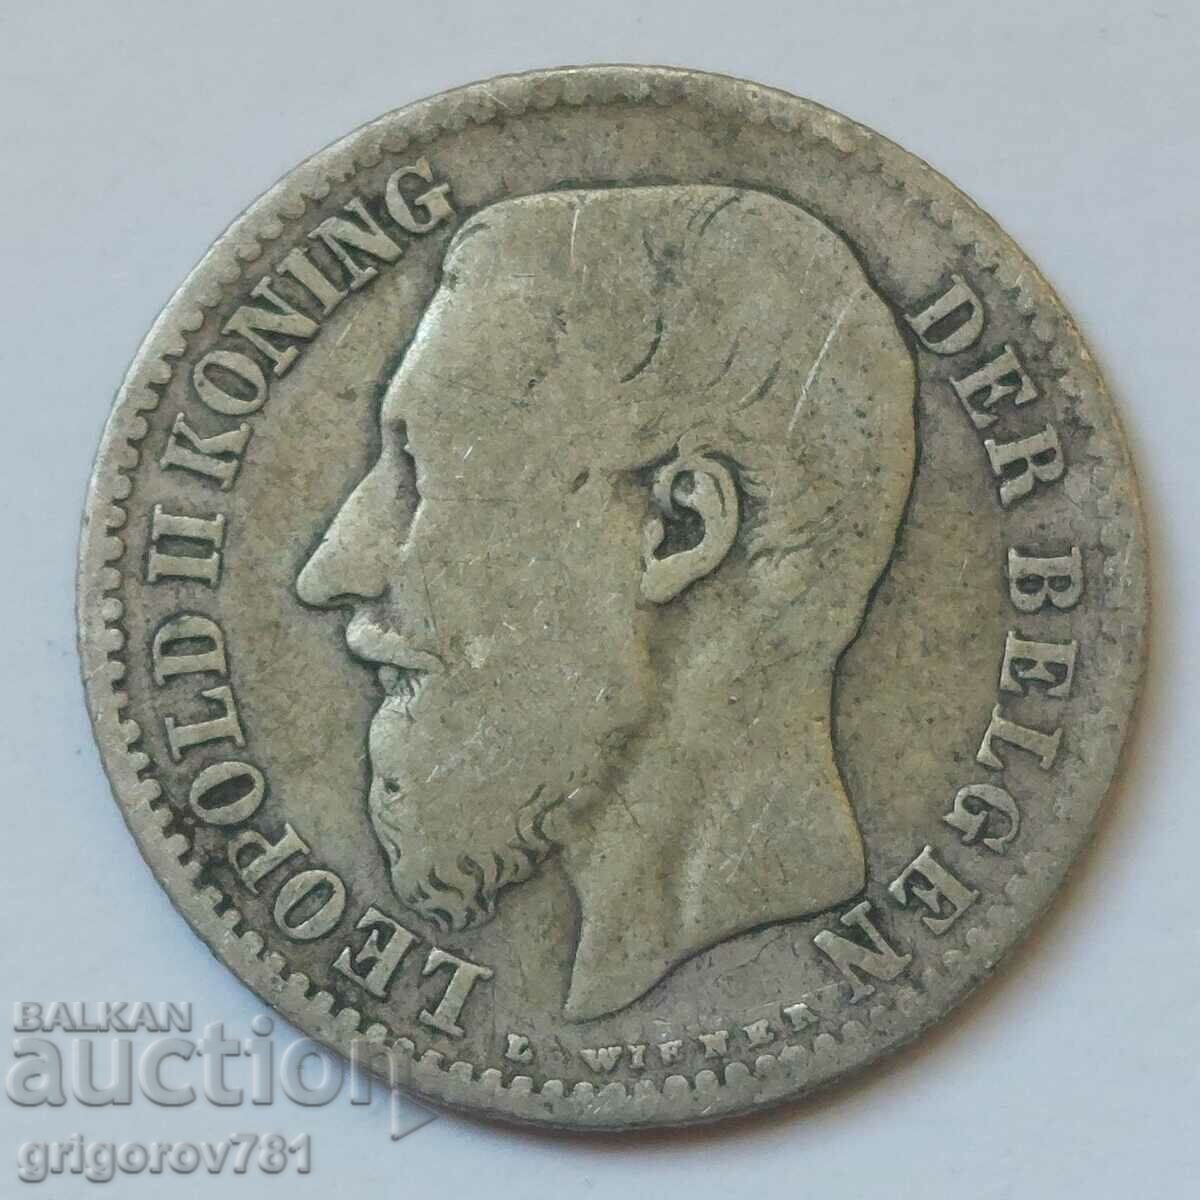 1 franc silver Belgium 1887 - silver coin #61